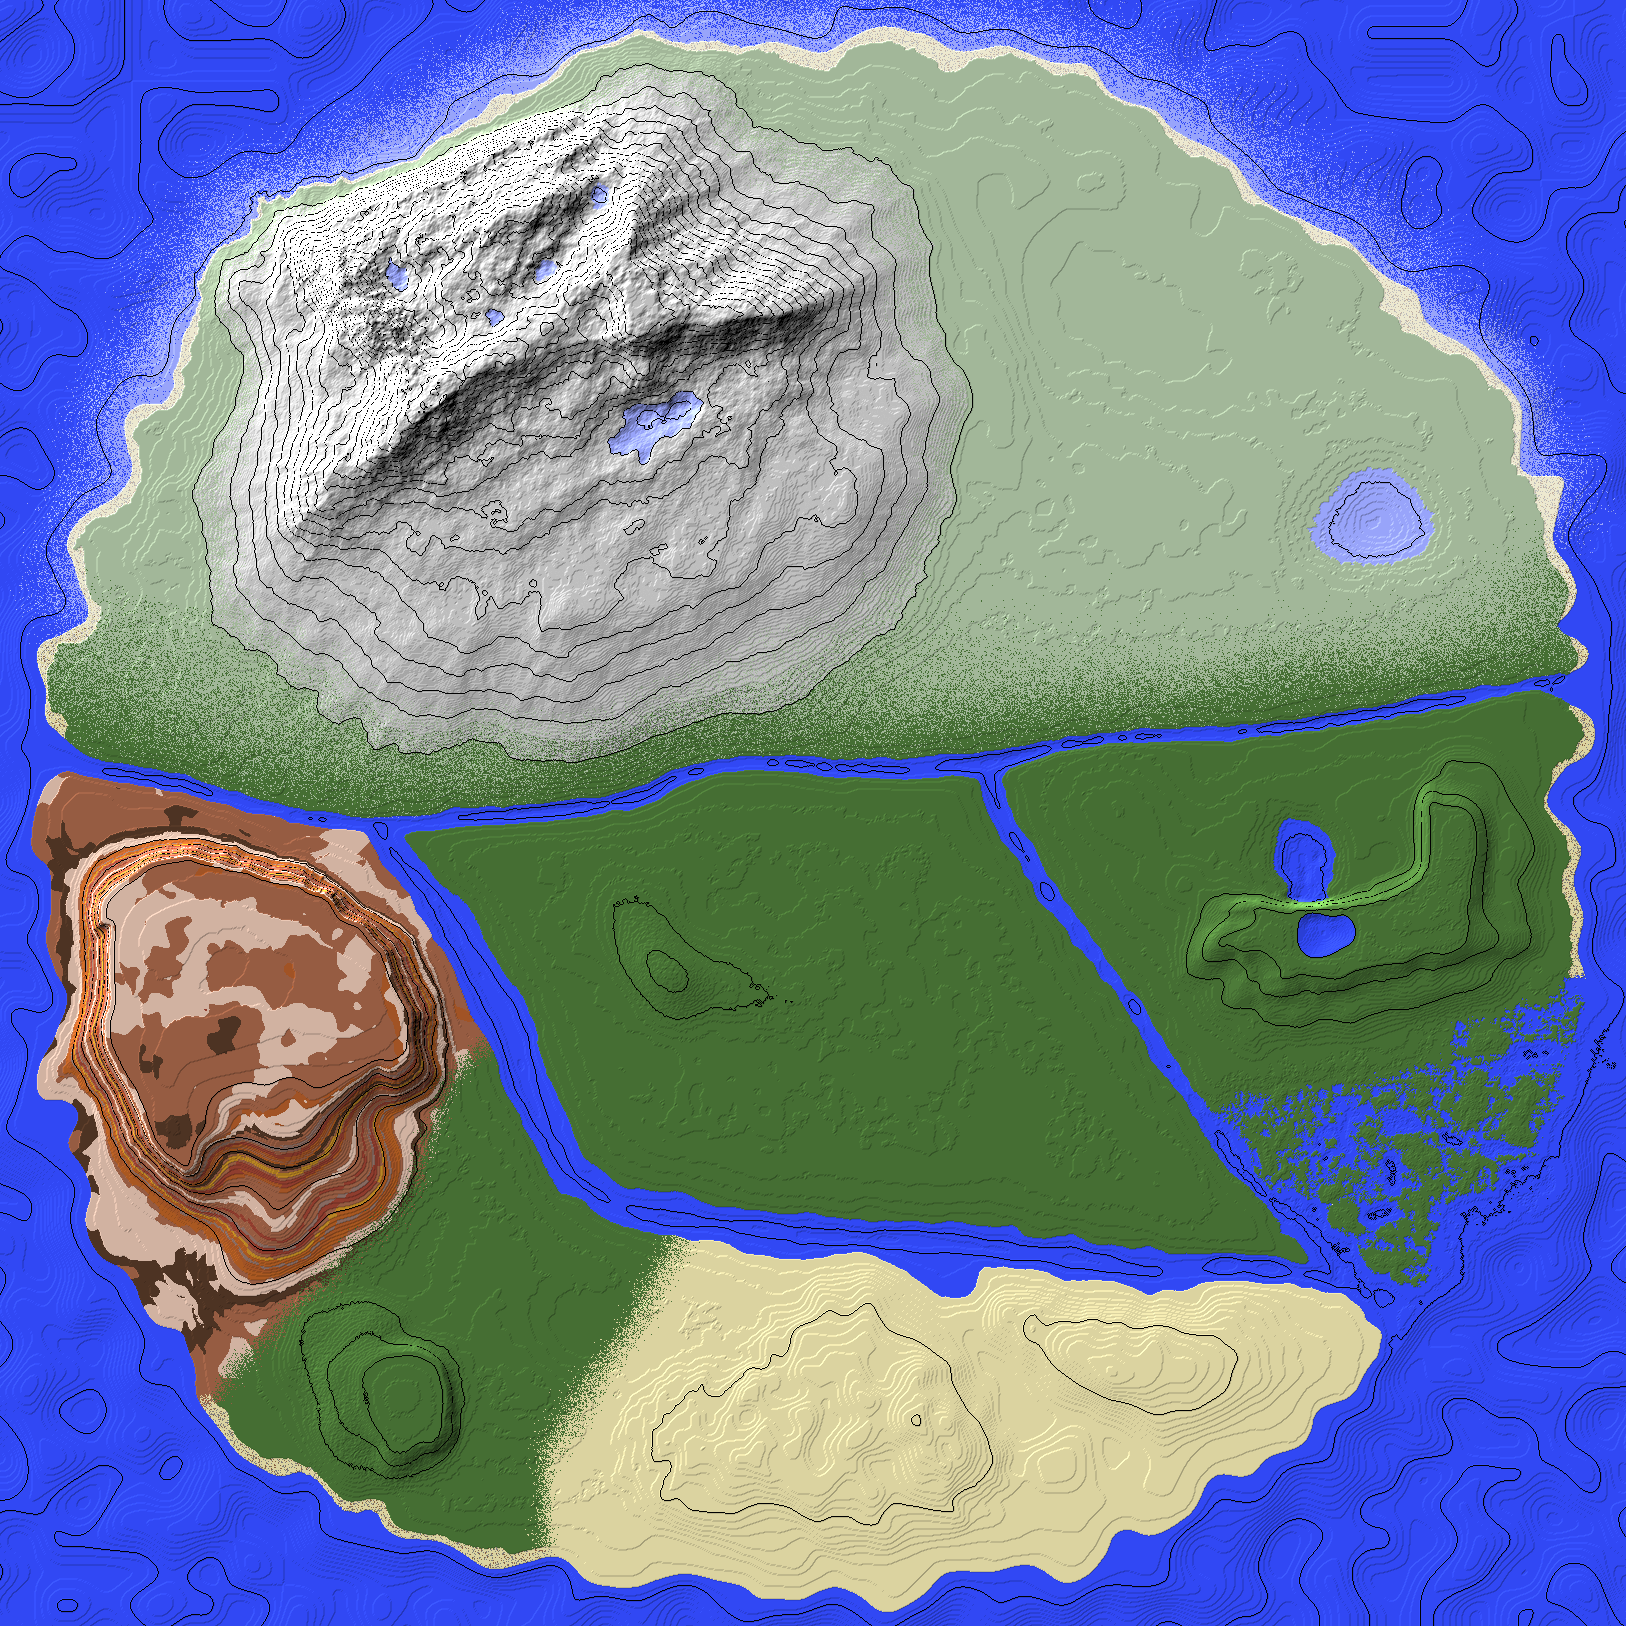 Avatar World Map - Minecraft Worlds - CurseForge